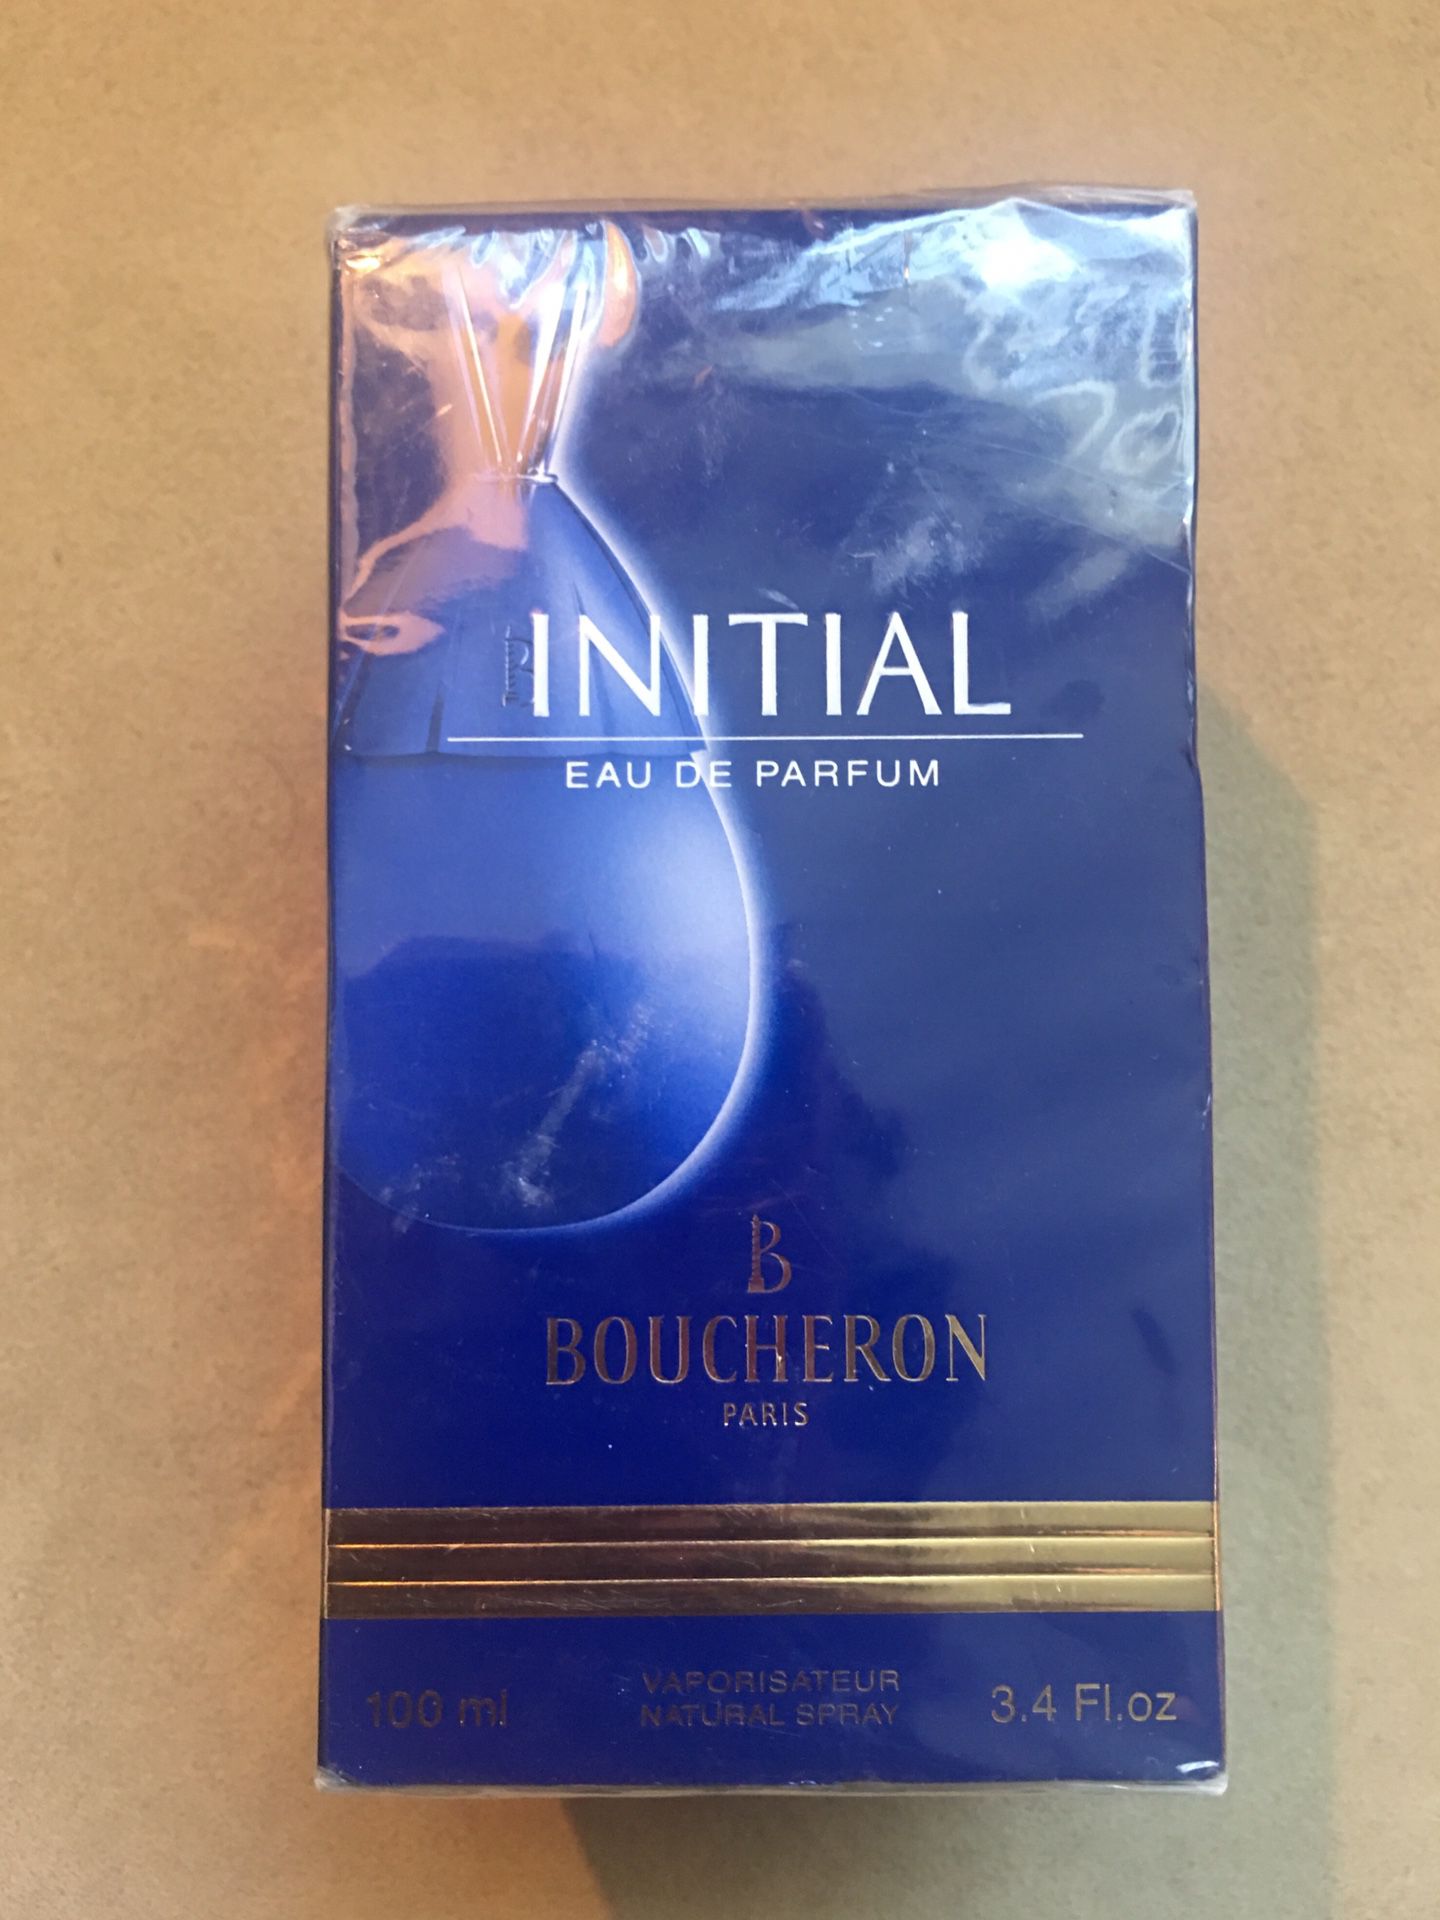 Initial perfume